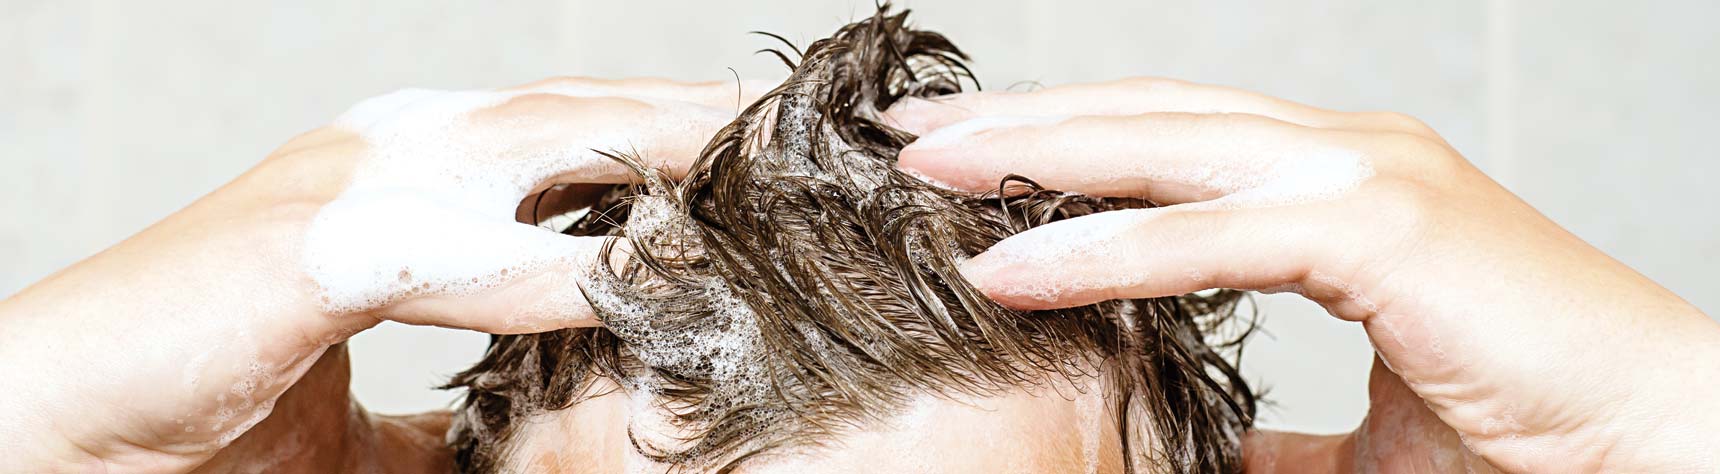 hair care for men